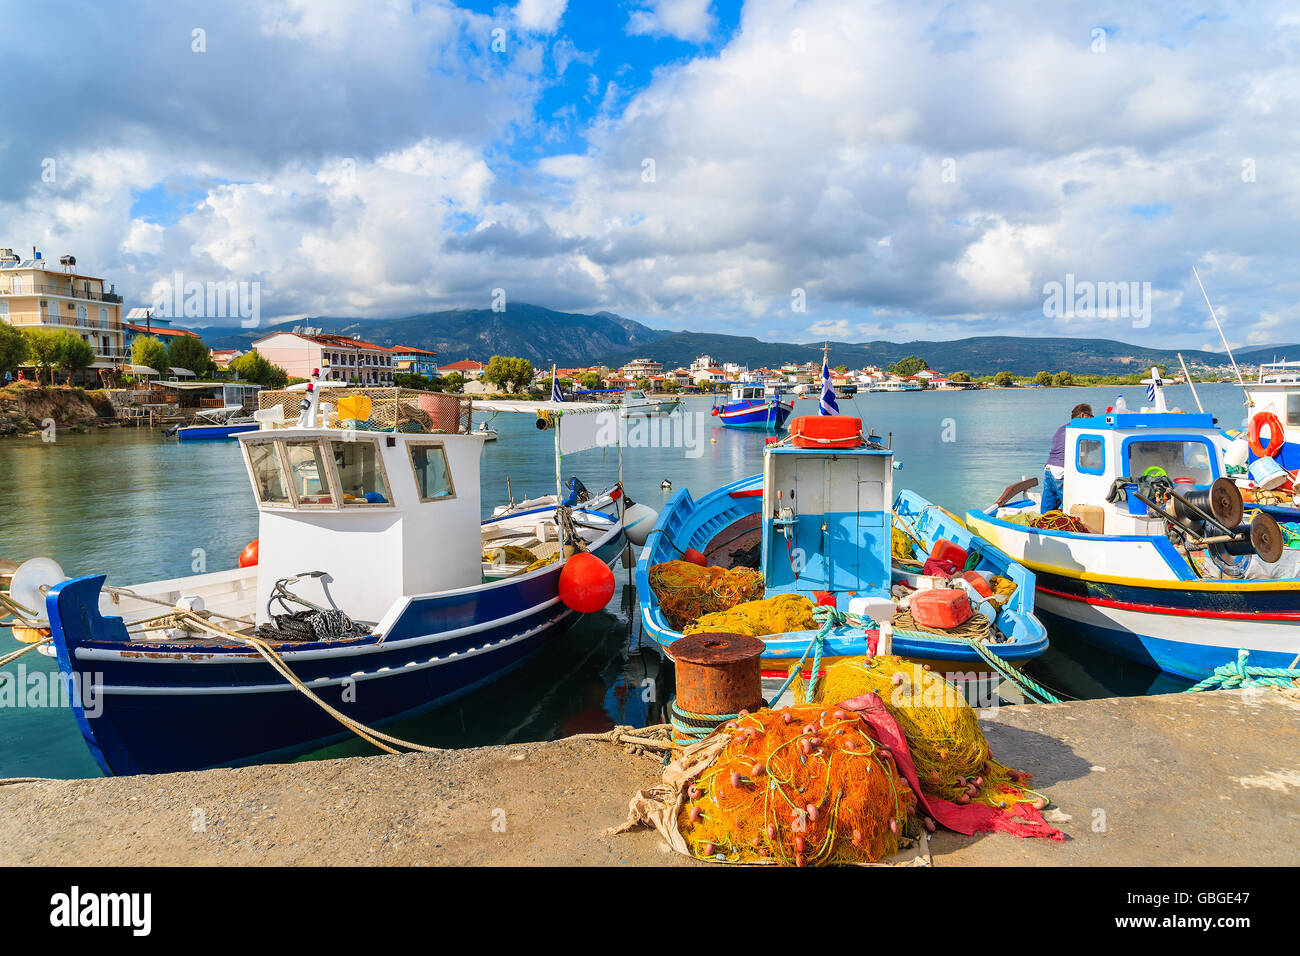 Bateaux de pêche dans le port grec, l'île de Samos, Grèce Banque D'Images